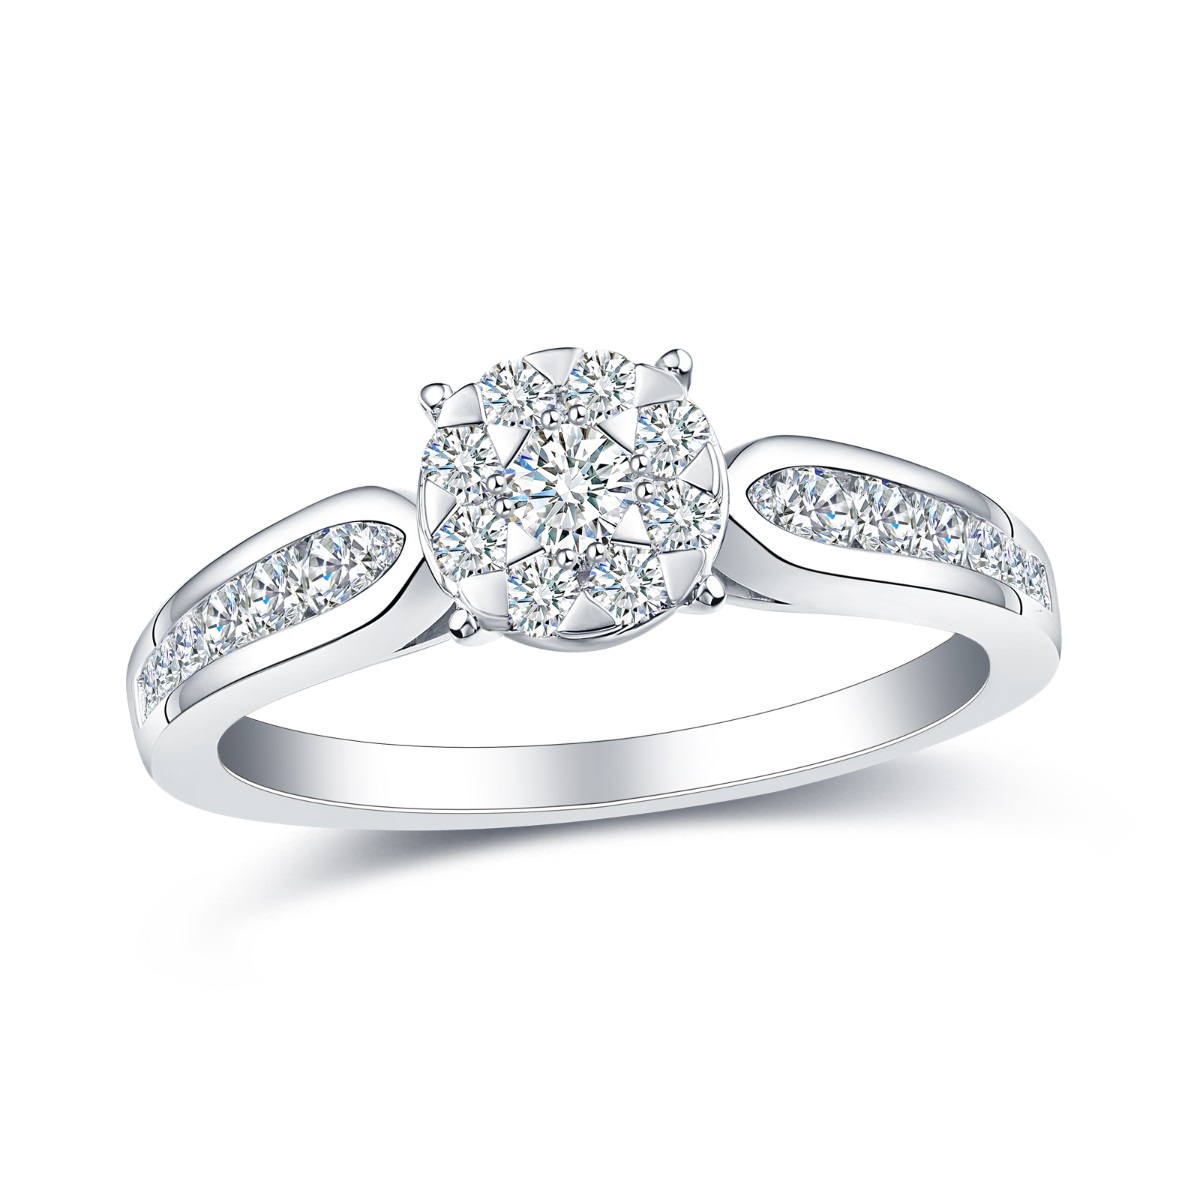 R35566WHT – 18K White Gold Diamond Ring, 0.62 TCW